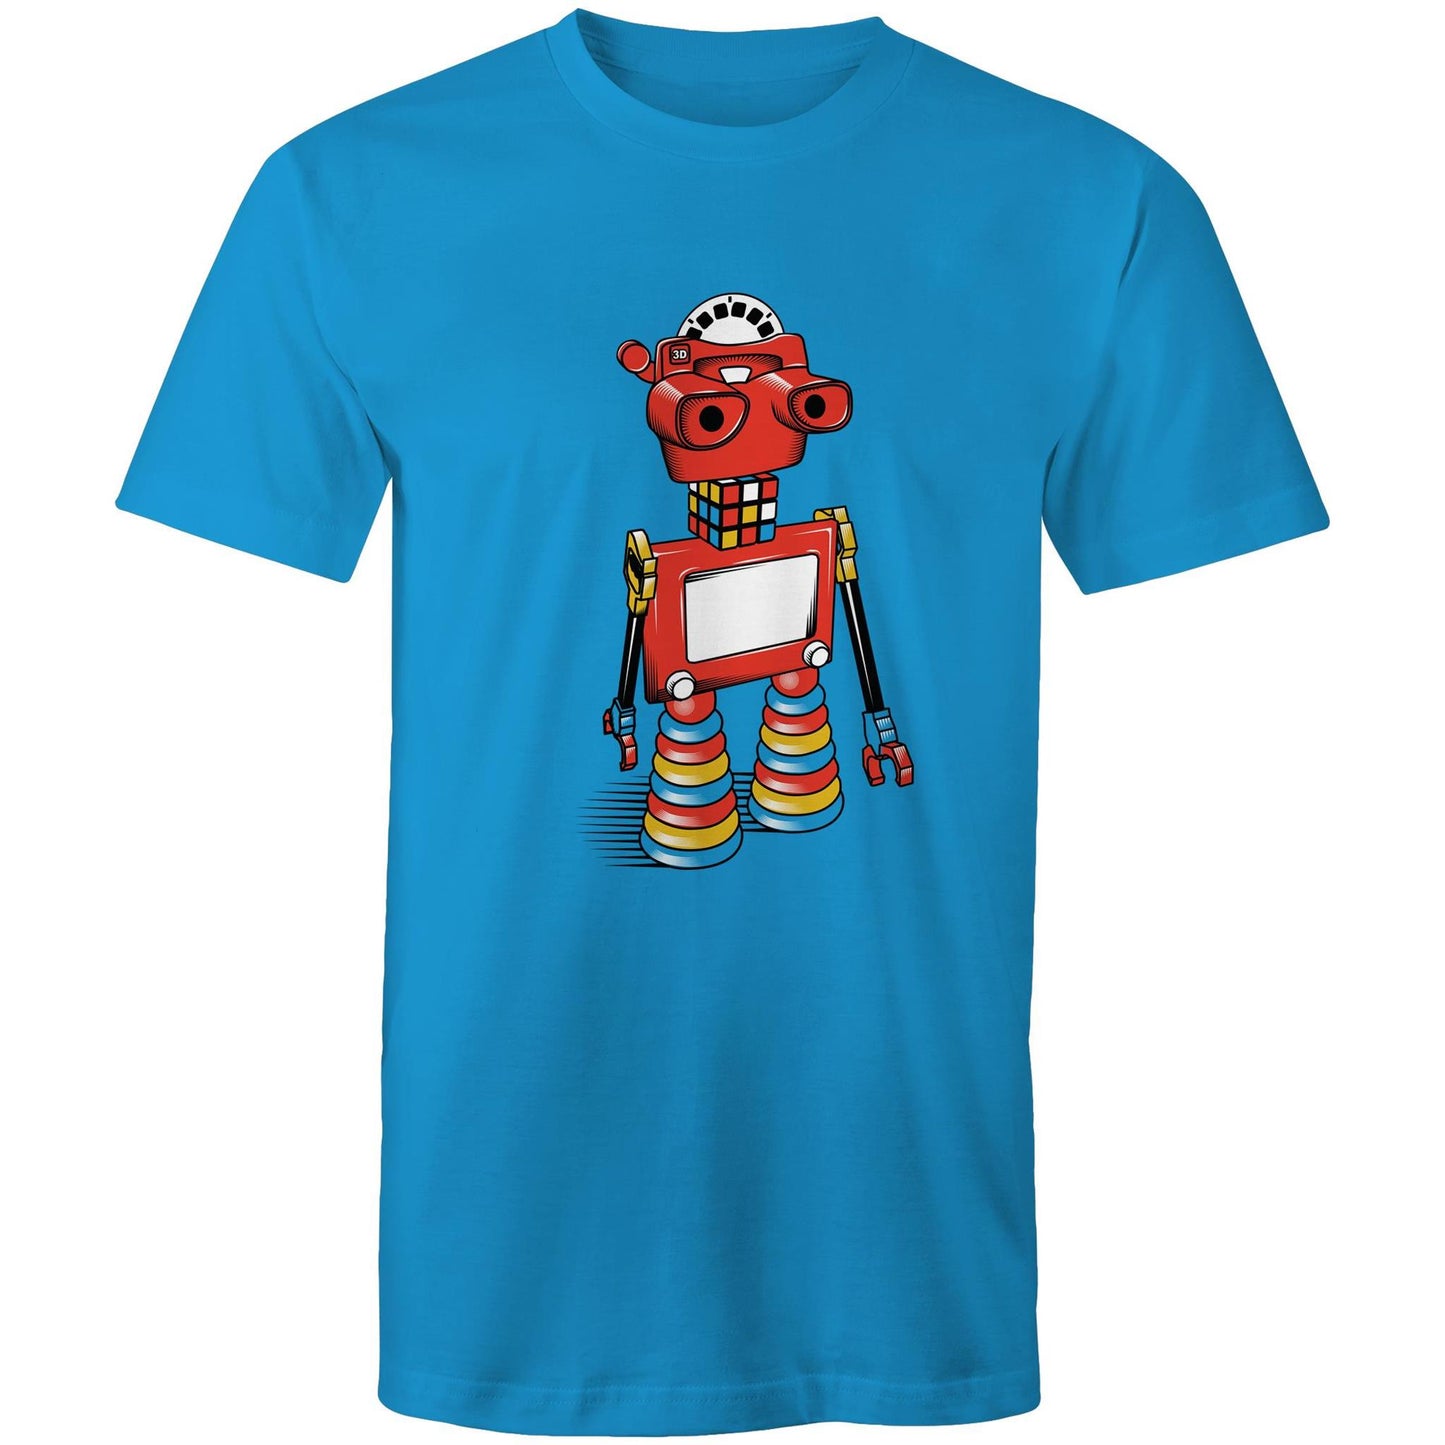 ViewBot 3000 - Men's T-Shirt